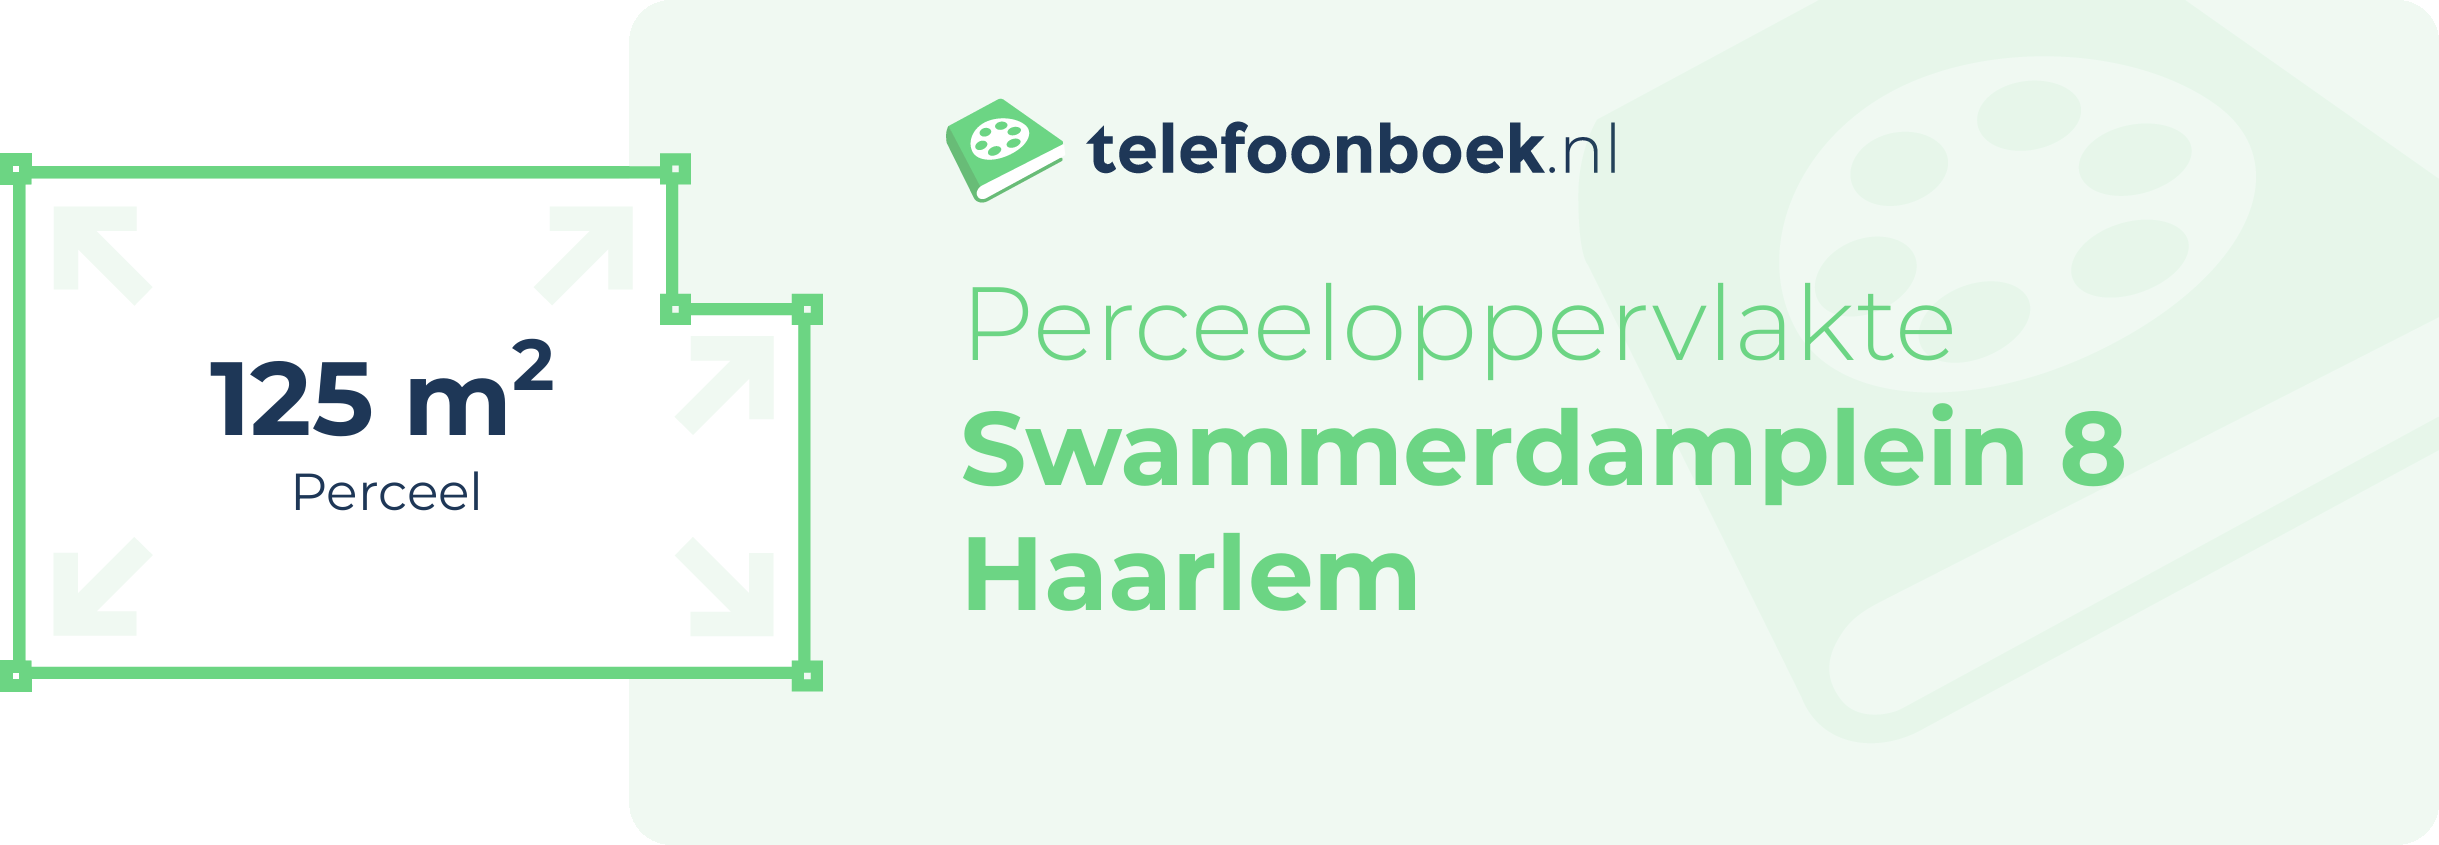 Perceeloppervlakte Swammerdamplein 8 Haarlem